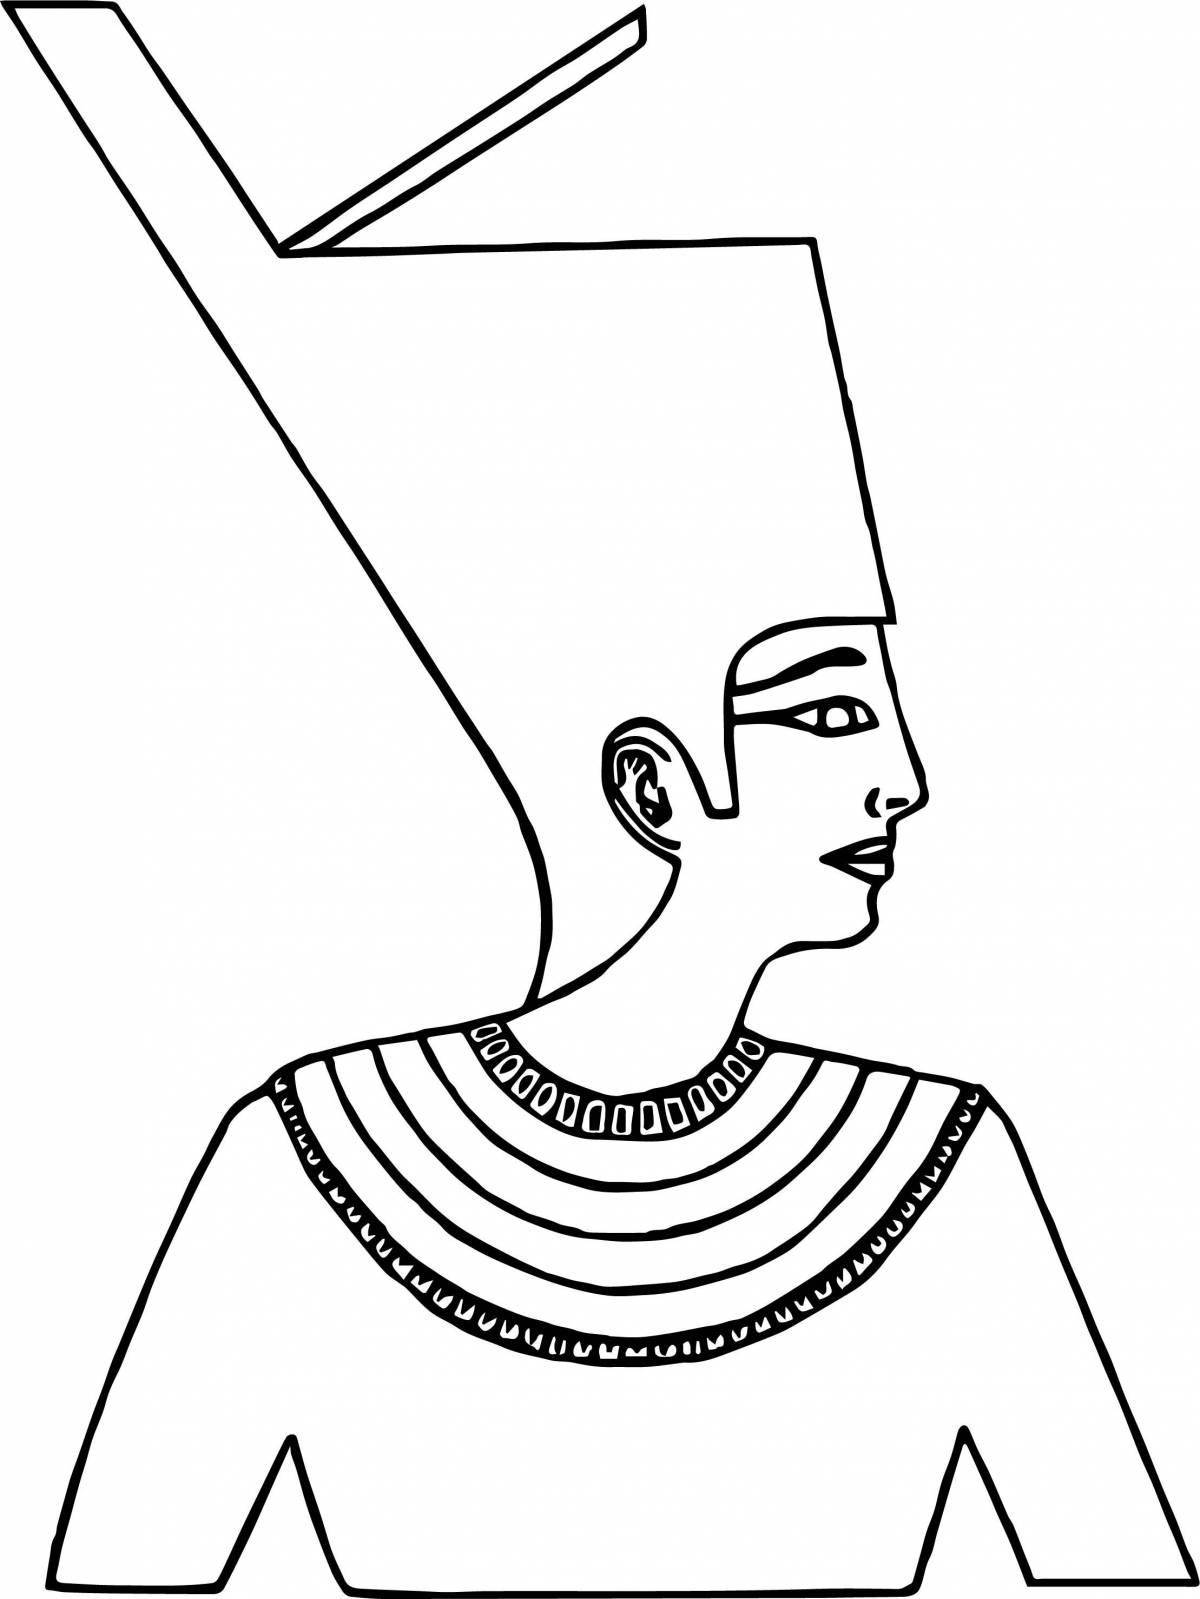 Coloring book shining mask of Pharaoh Tutankhamun